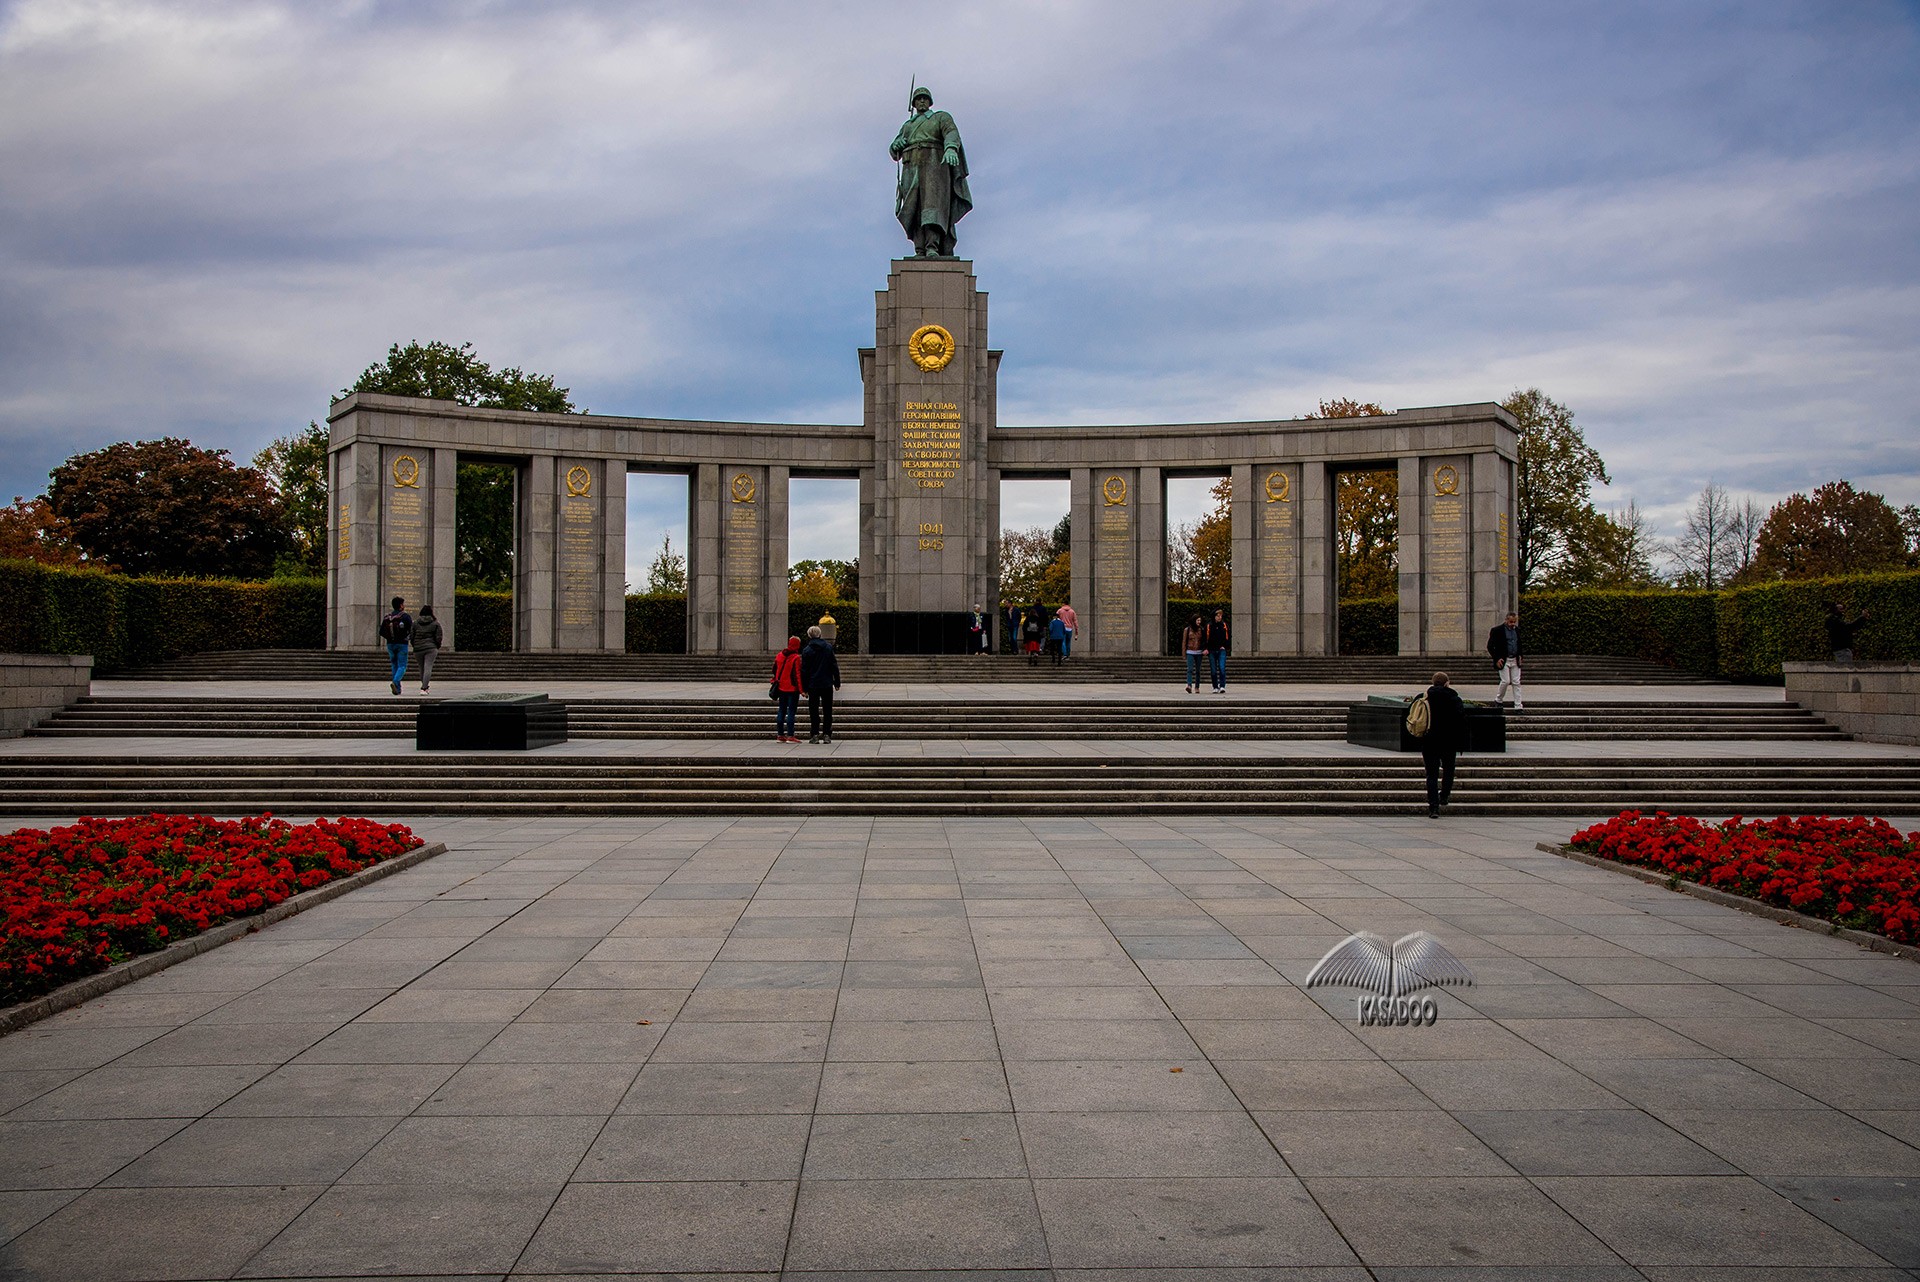 Monumento de Guerra Soviético-Tiergarten